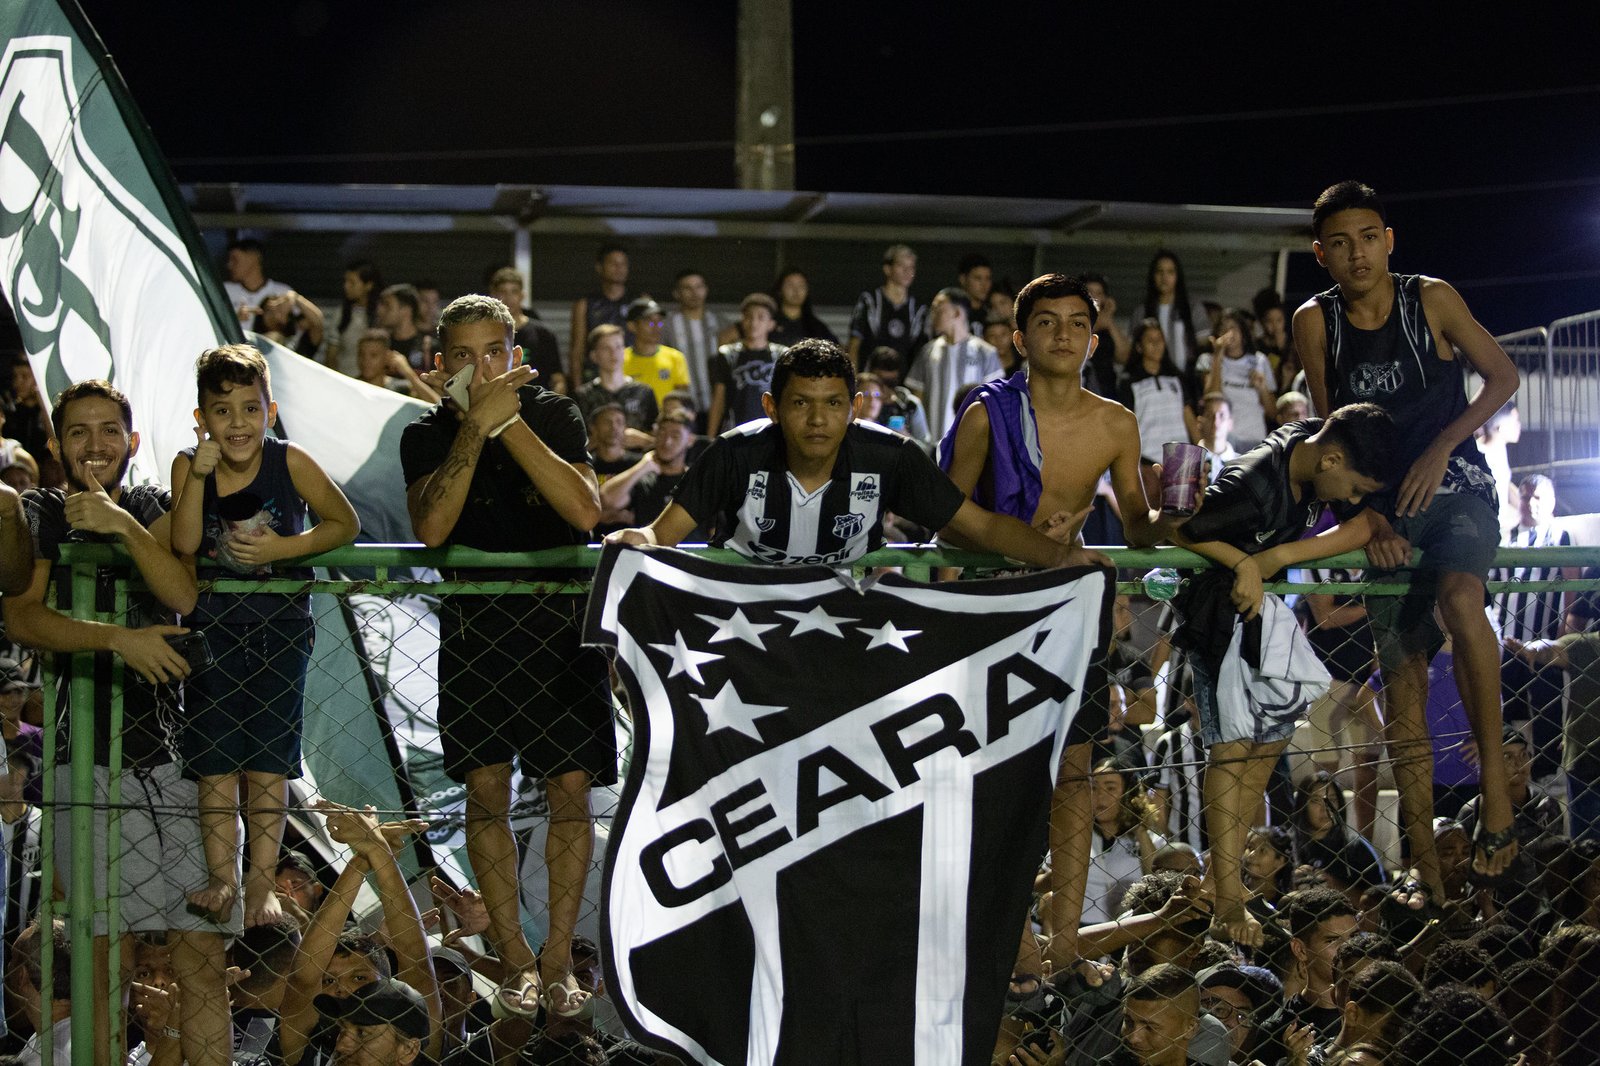 Ceará ganha o 1º título nacional feminino do Nordeste; o maior investimento  da região - Cassio Zirpoli